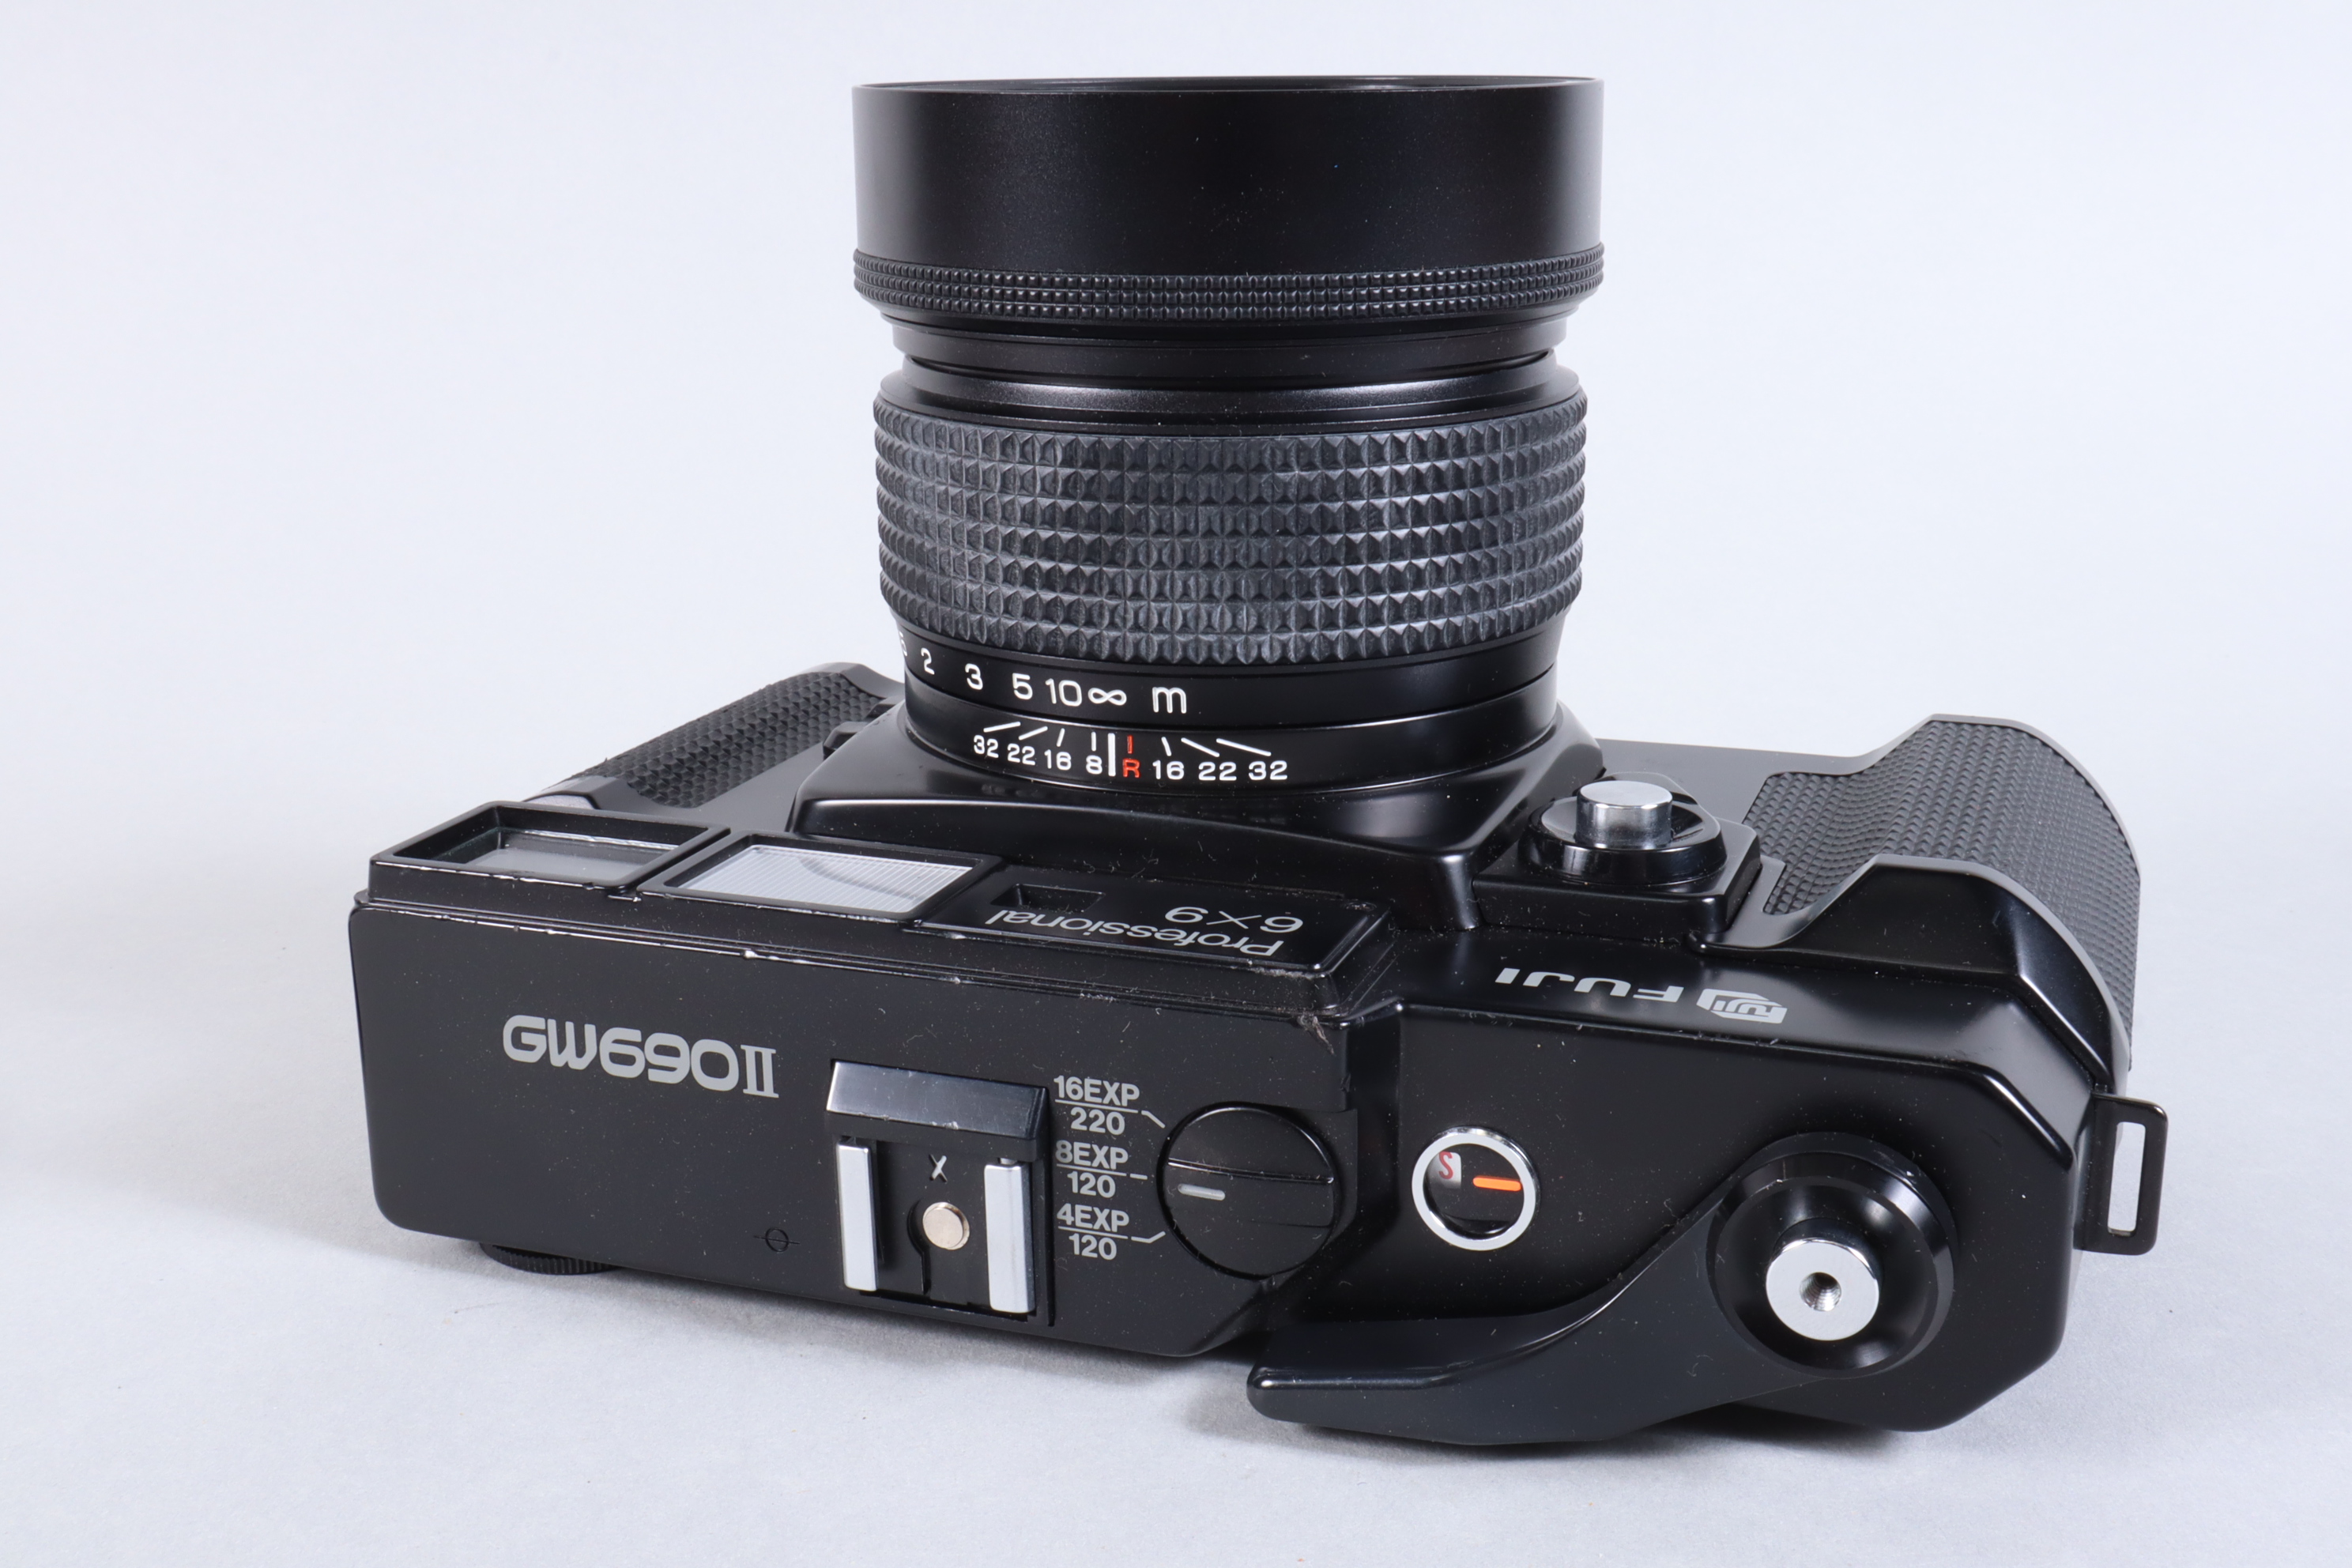 A Fuji Professional 6x9 GW690 II Camera, serial no, 6050183 